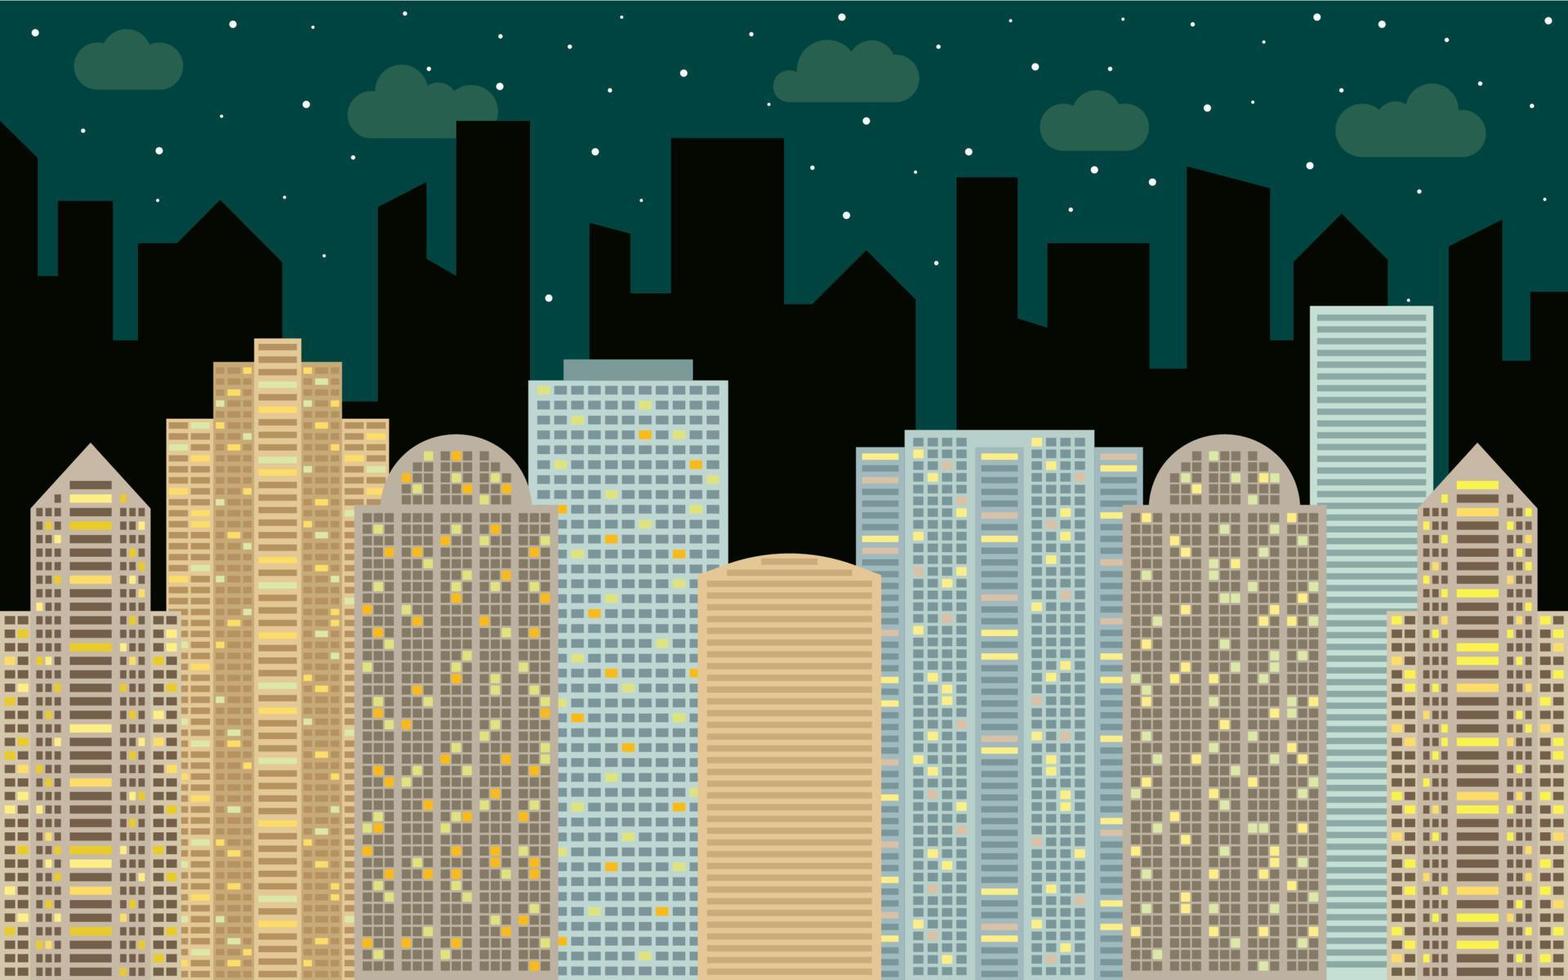 paisaje urbano nocturno. vista de la calle con paisaje urbano, rascacielos y edificios modernos en un día soleado. espacio de la ciudad en concepto de fondo de estilo plano. vector